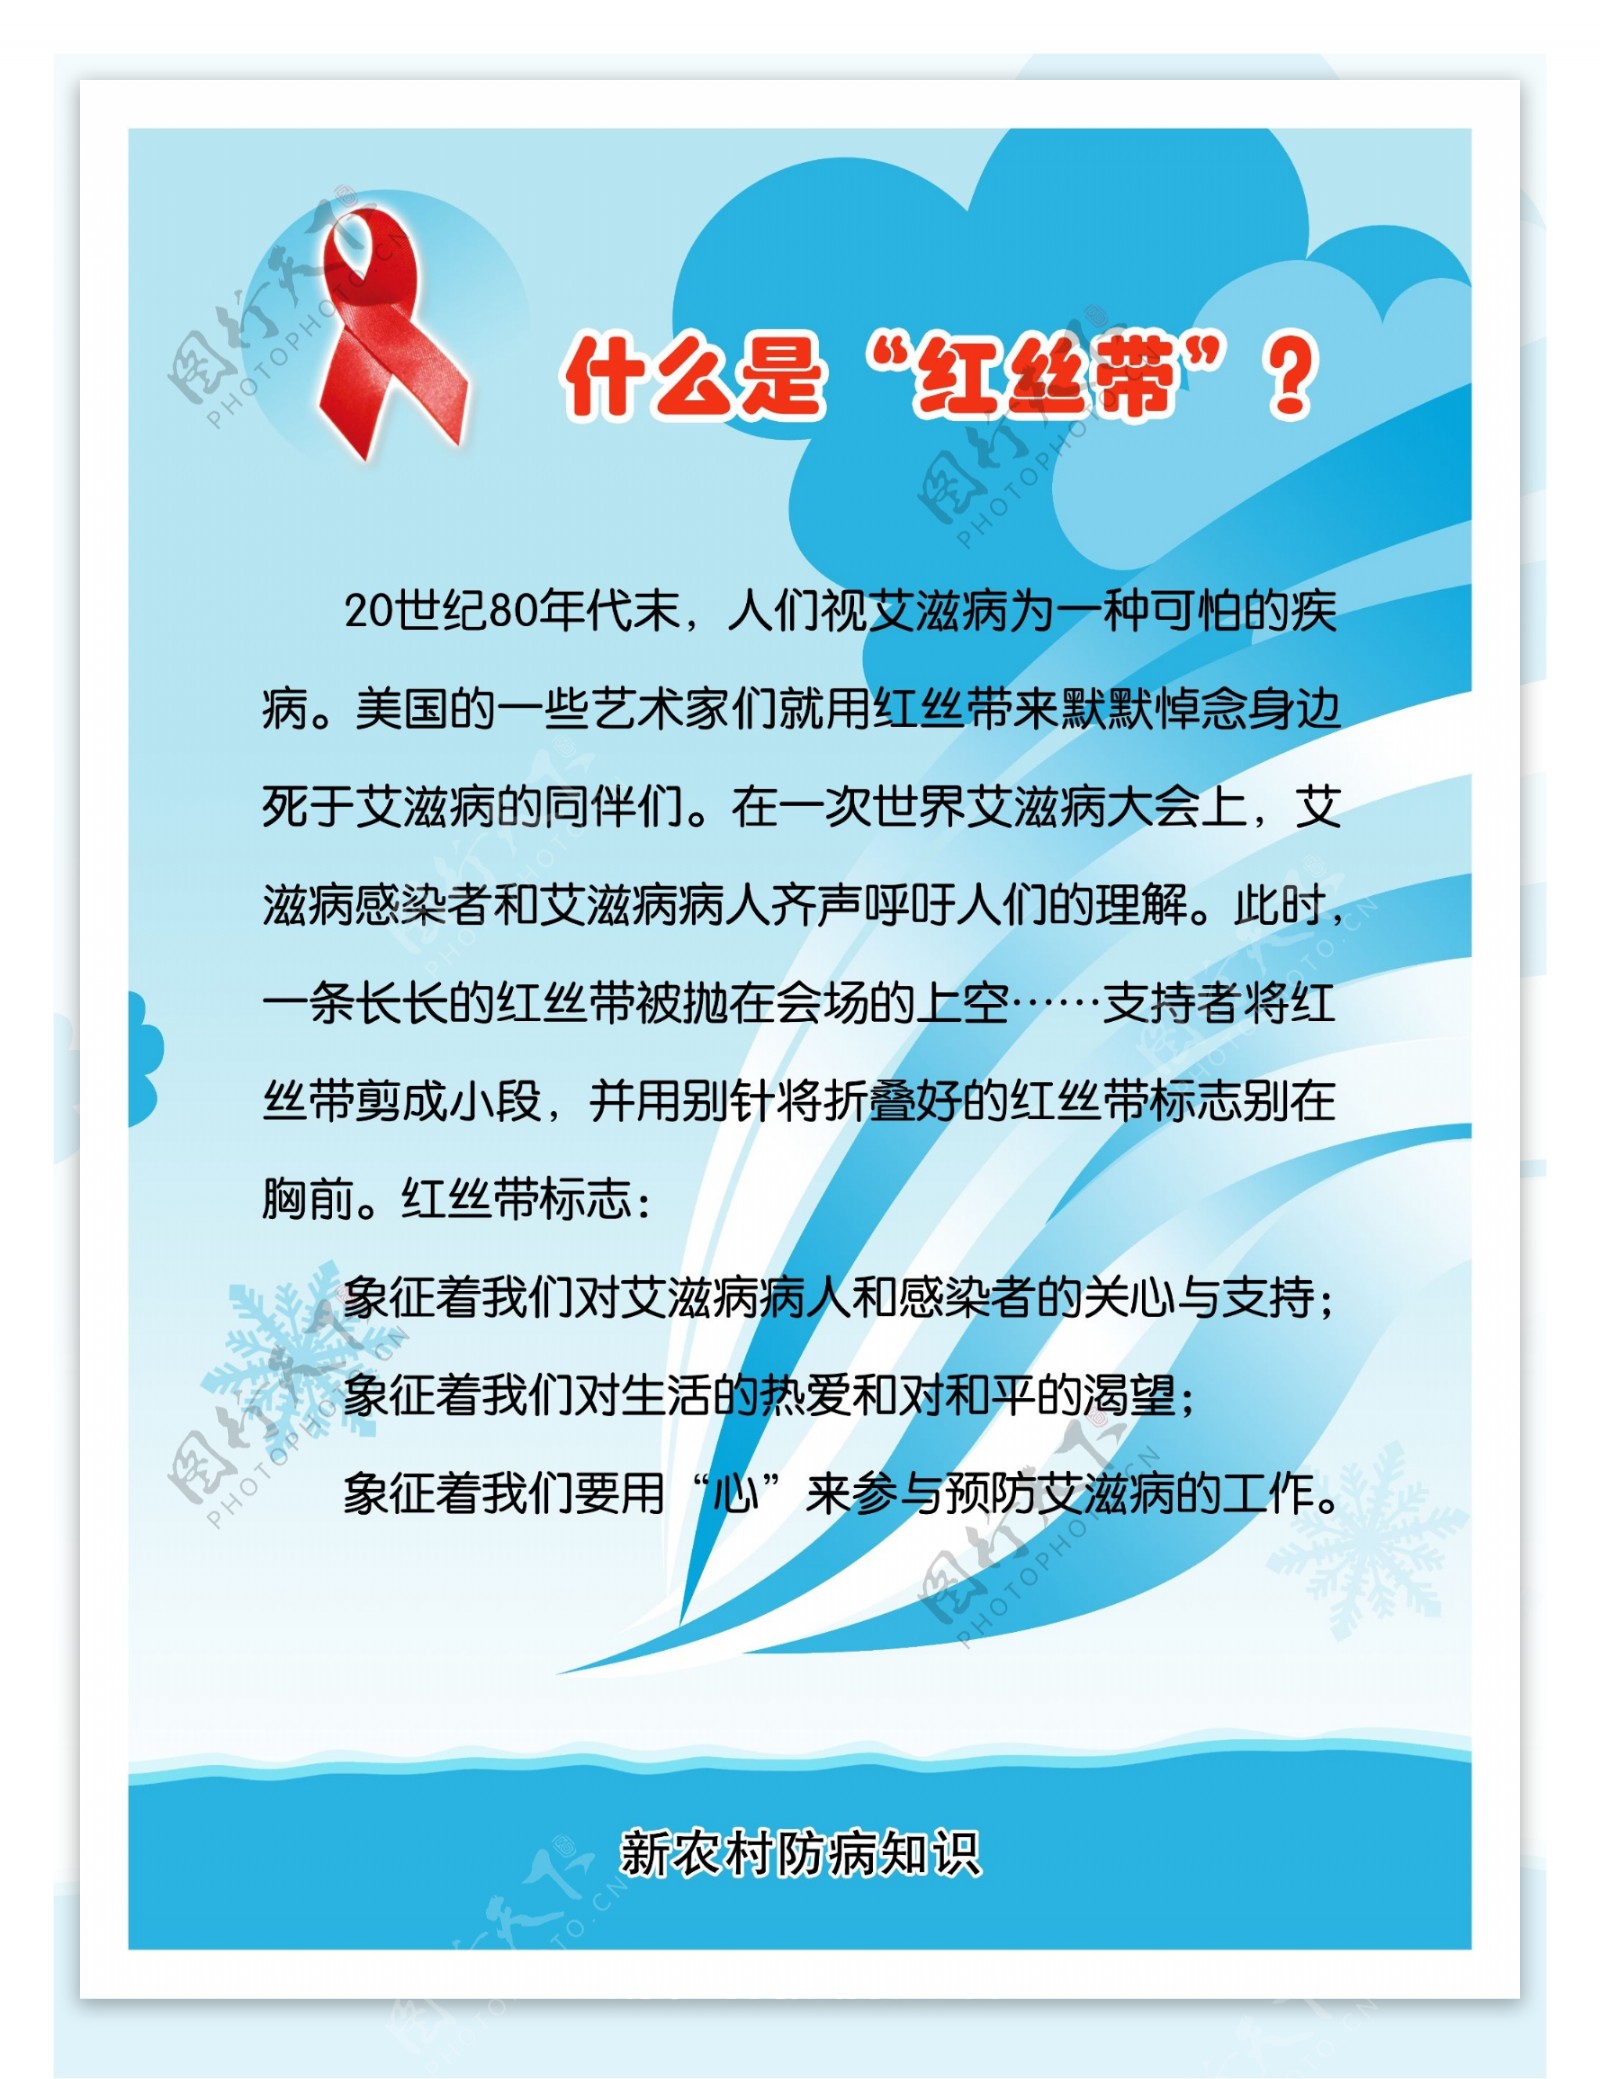 艾滋病展板图片